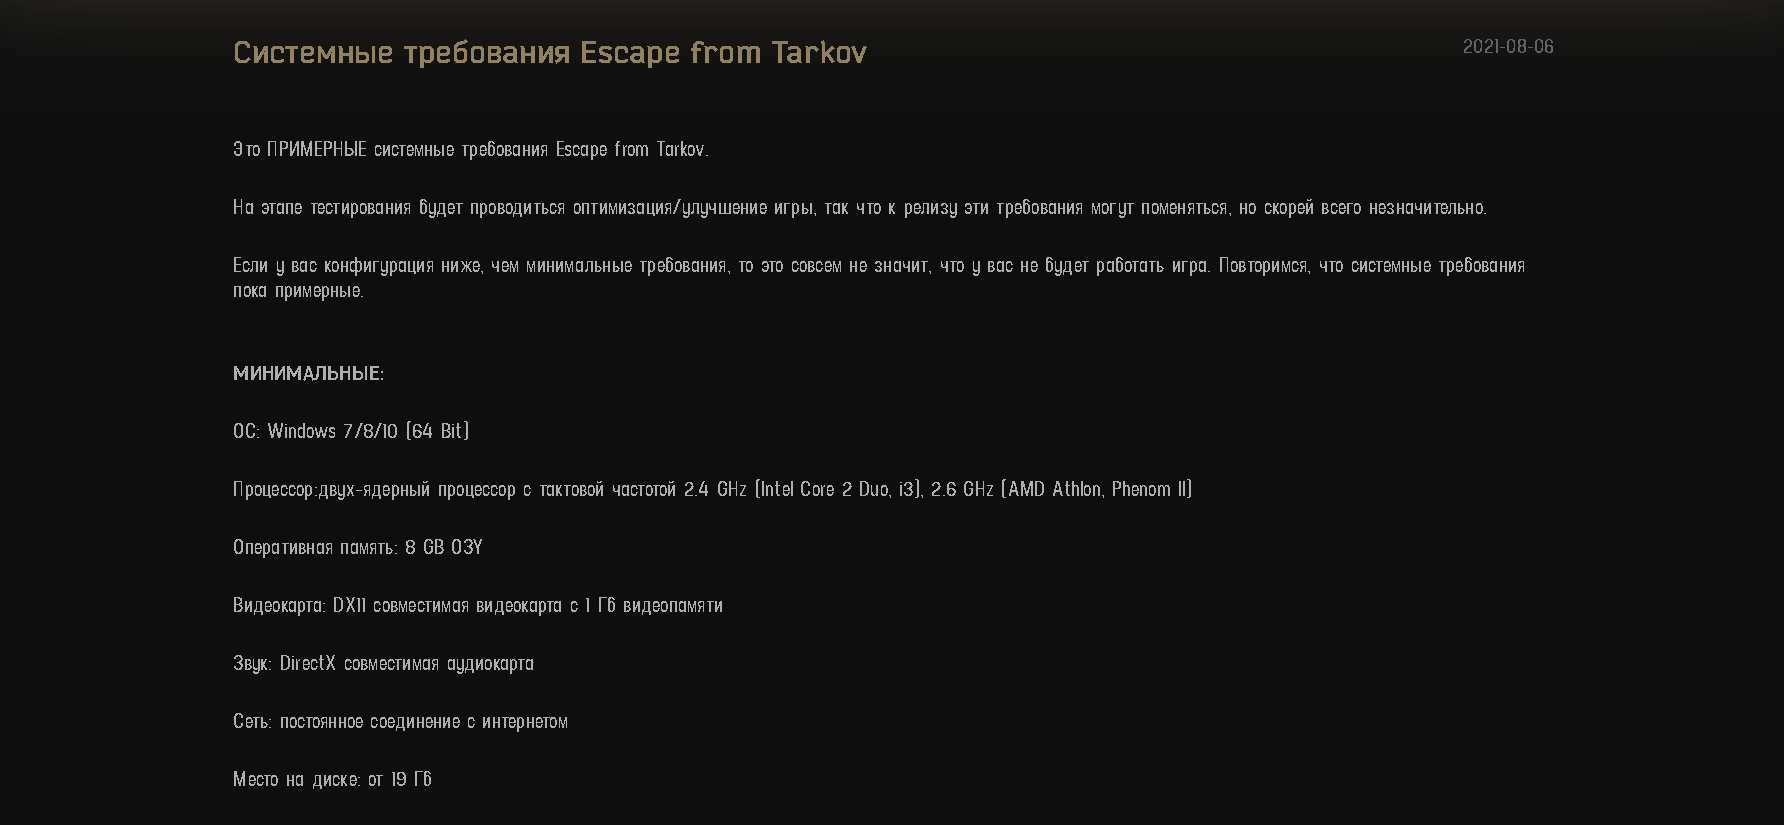 Системные требования Escape from Tarkov